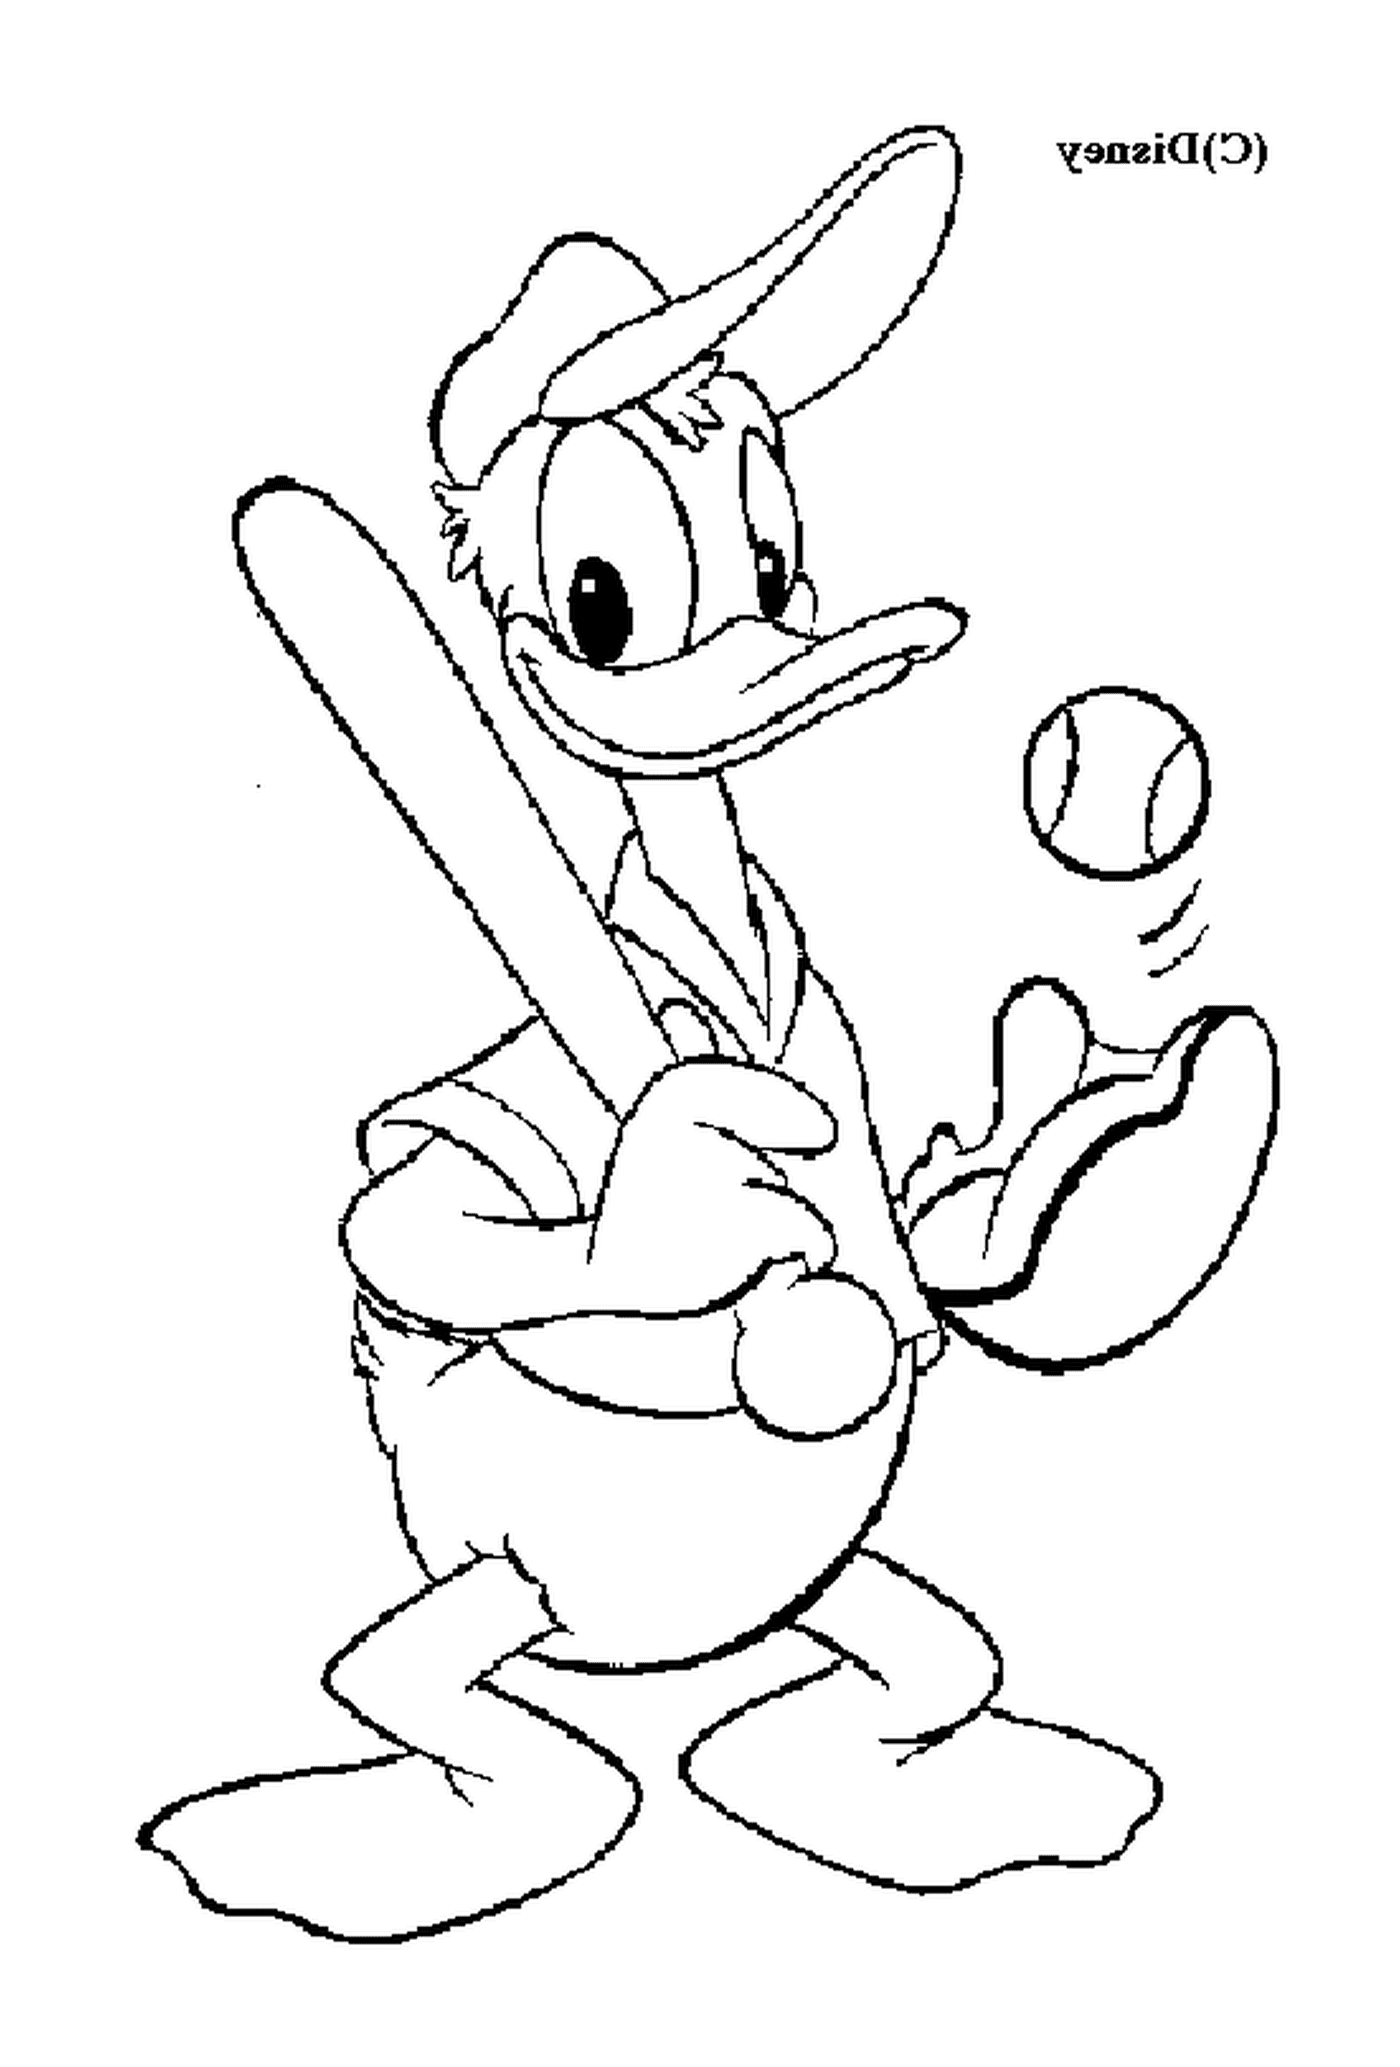  Donald gioca a baseball con ardore 